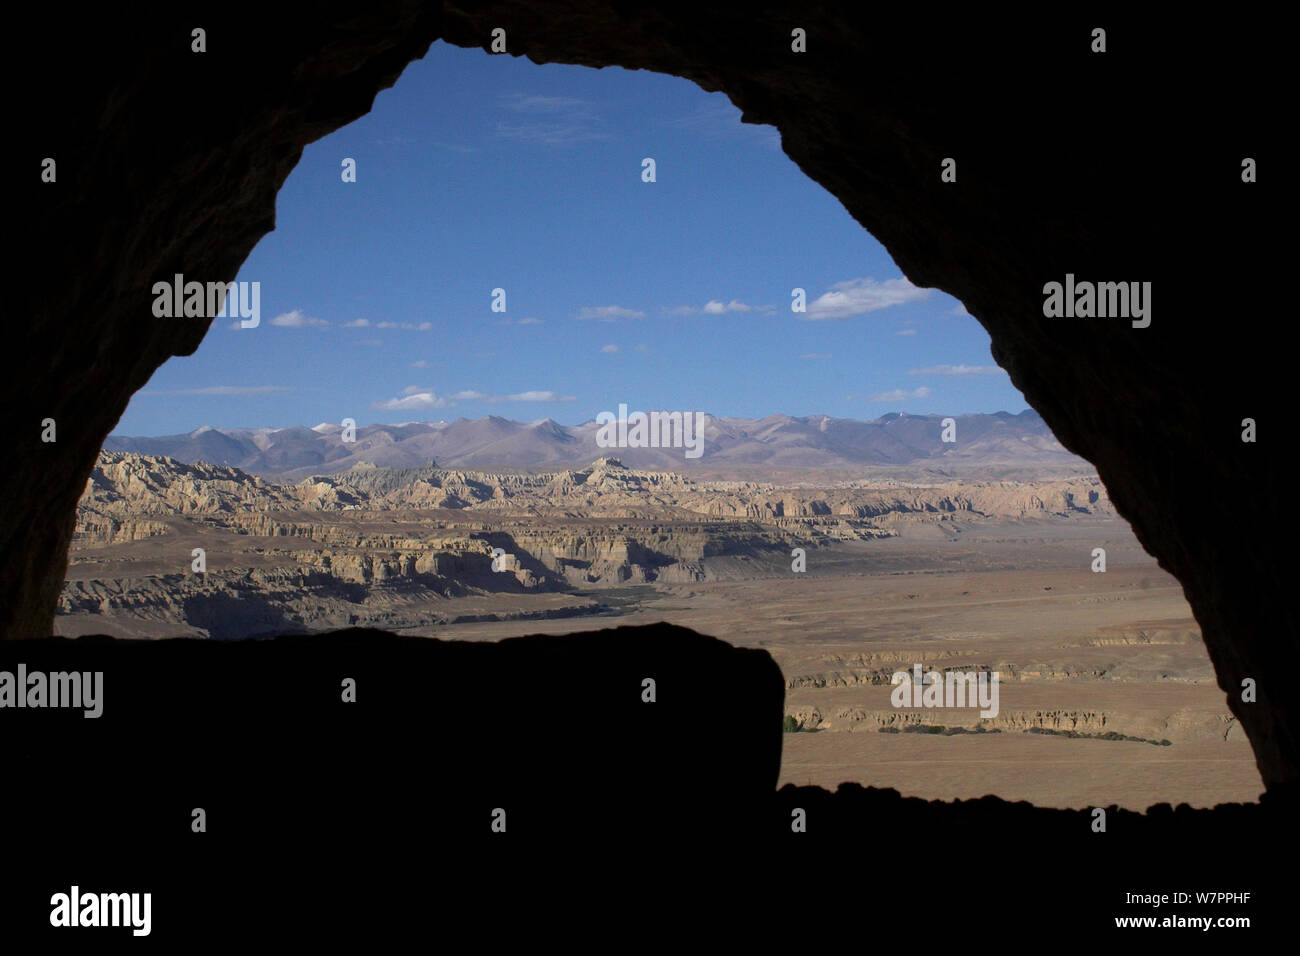 Guardando fuori dall'interno grotta in Tsaparang (talvolta noto come la mitica Shangri-la) fu la capitale dell'antico regno di Guge nella valle di Garuda, prefettura di Ngari, Tibet occidentale. Tsaparang è un enorme fortezza arroccata su una piramide di roccia a forma crescente circa 600 piedi (183m). Essa contiene numerose gallerie e grotte che sono state scavate nella roccia. Foto Stock